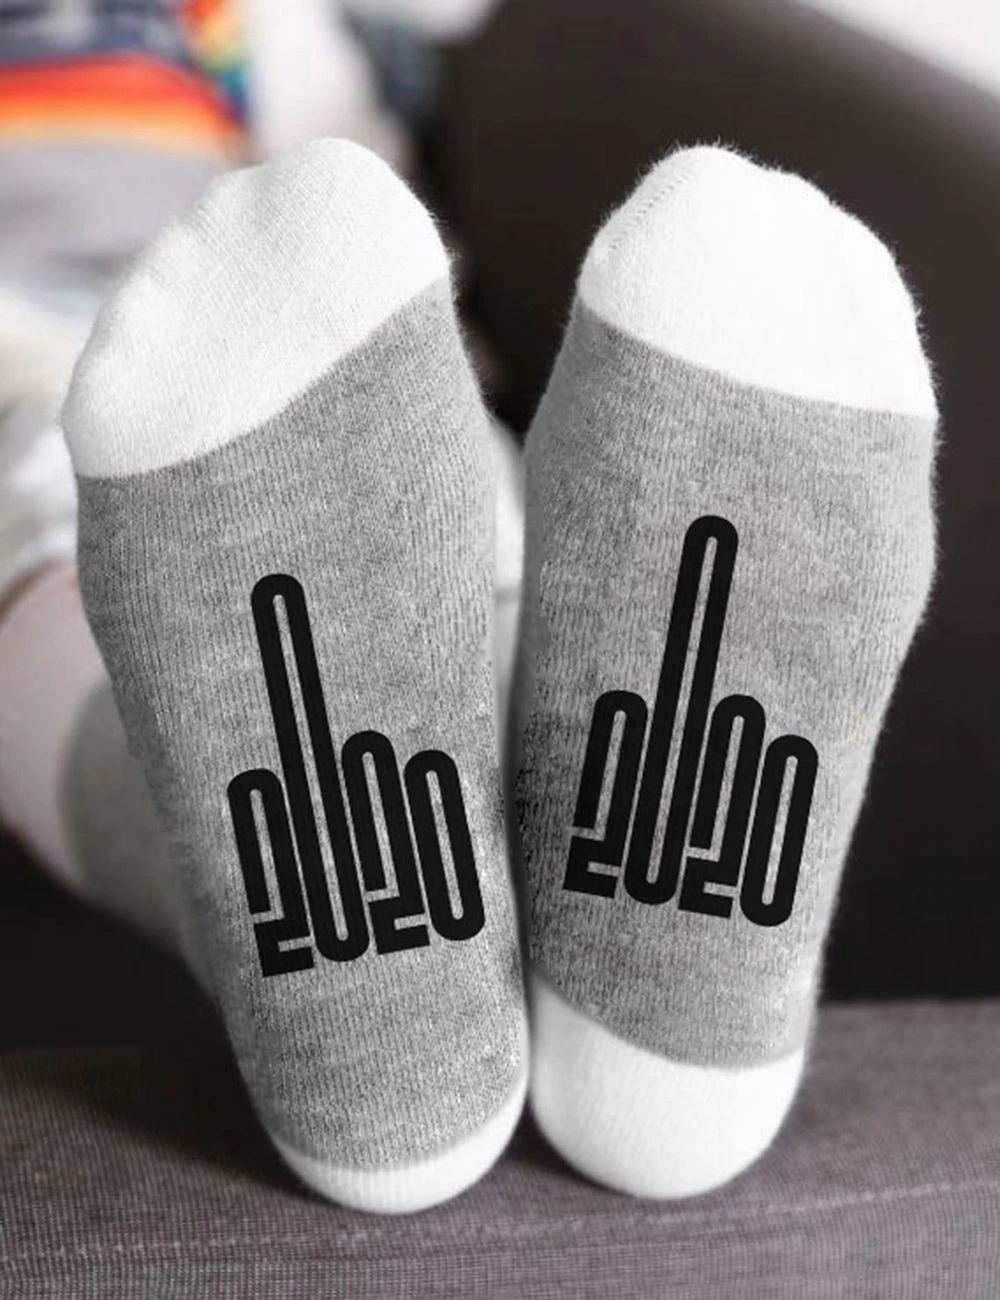 Middle Finger 2020 Digital Letter Socks Crew Novelty Socks